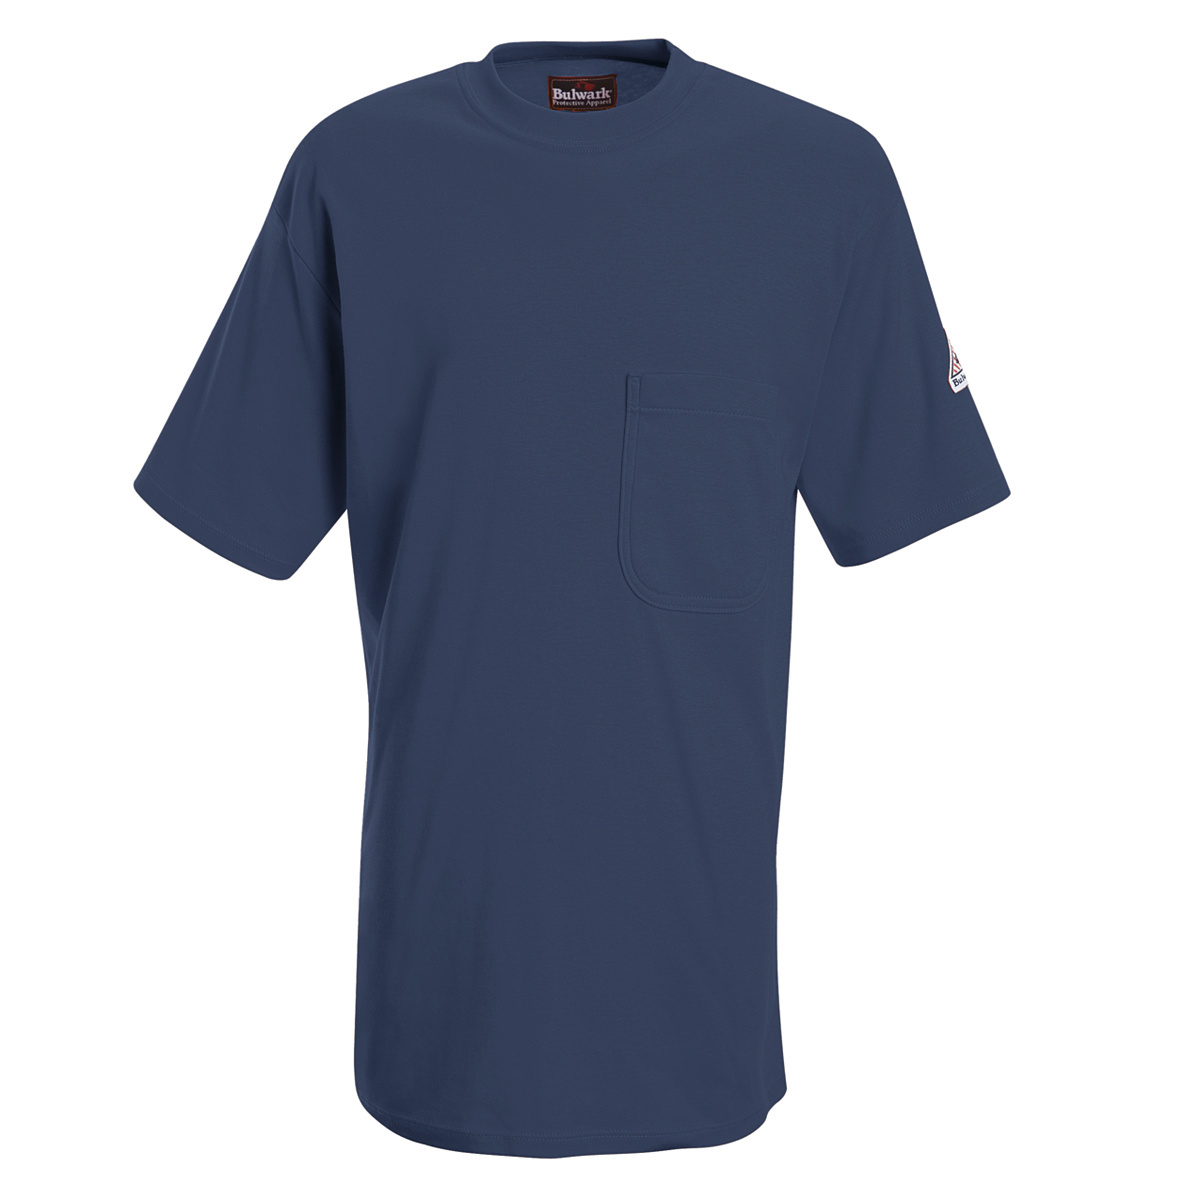 Bulwark® Large Regular Navy Blue EXCEL FR® Interlock FR Cotton Flame Resistant Shirt